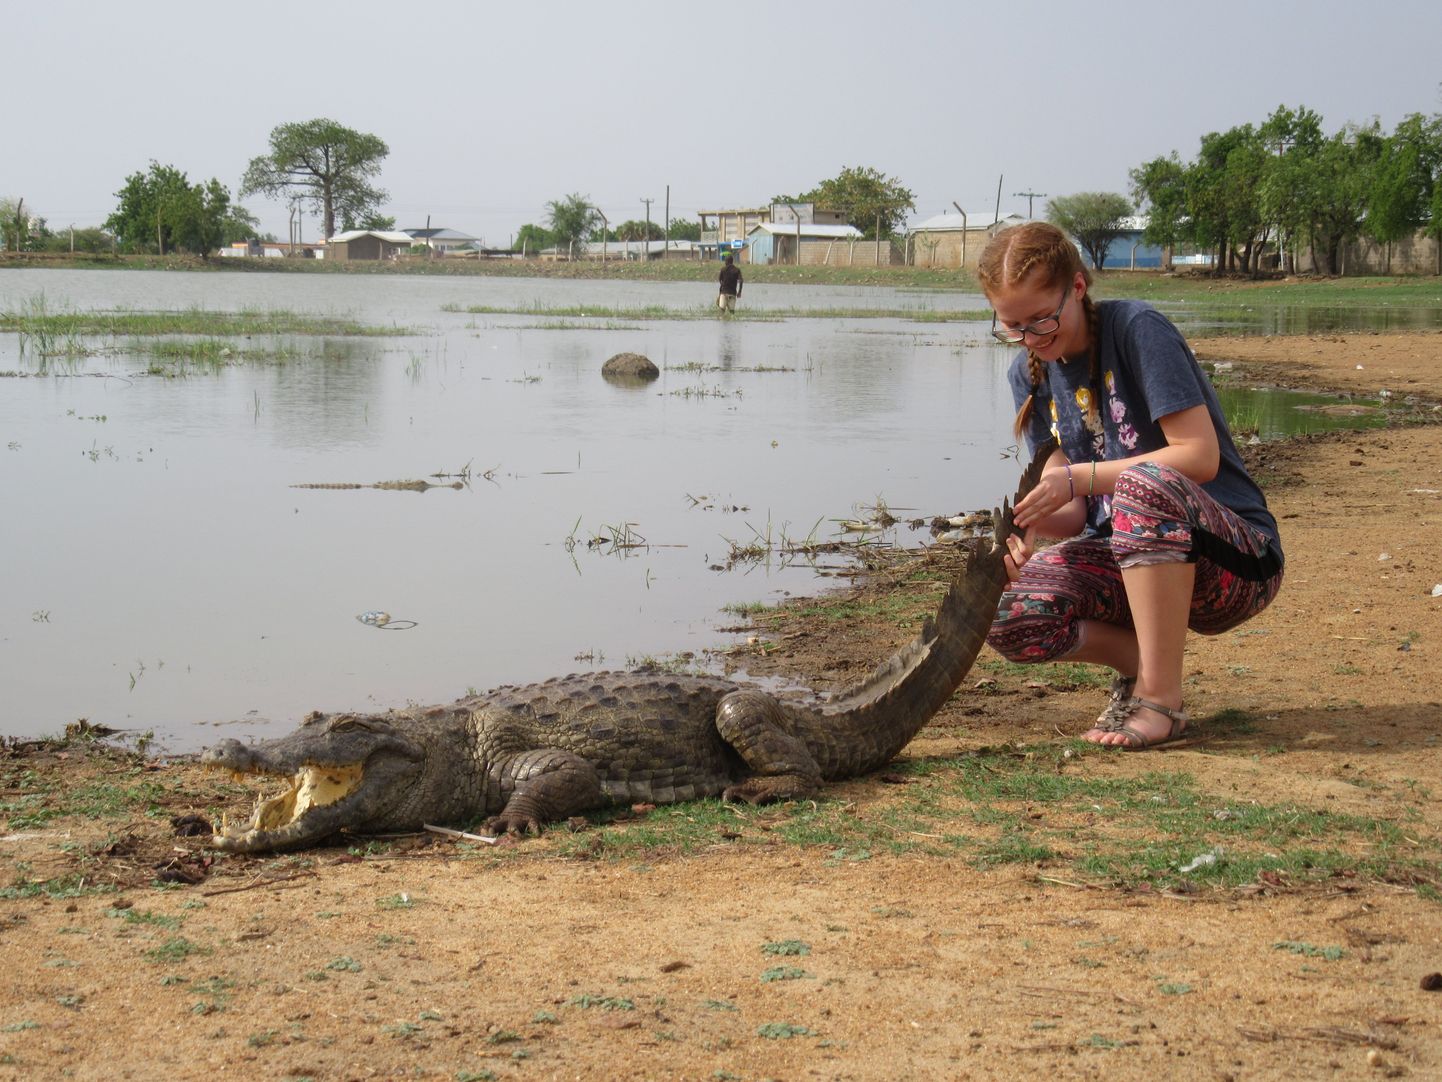 Burkina Faso ja Ghana piiril oleva Paga krokodillitiigi juures sai Margit krokodilli sabast katsuda. «Veidi hirmutav, kuid siiski põnev kogemus,» kinnitas neiu.